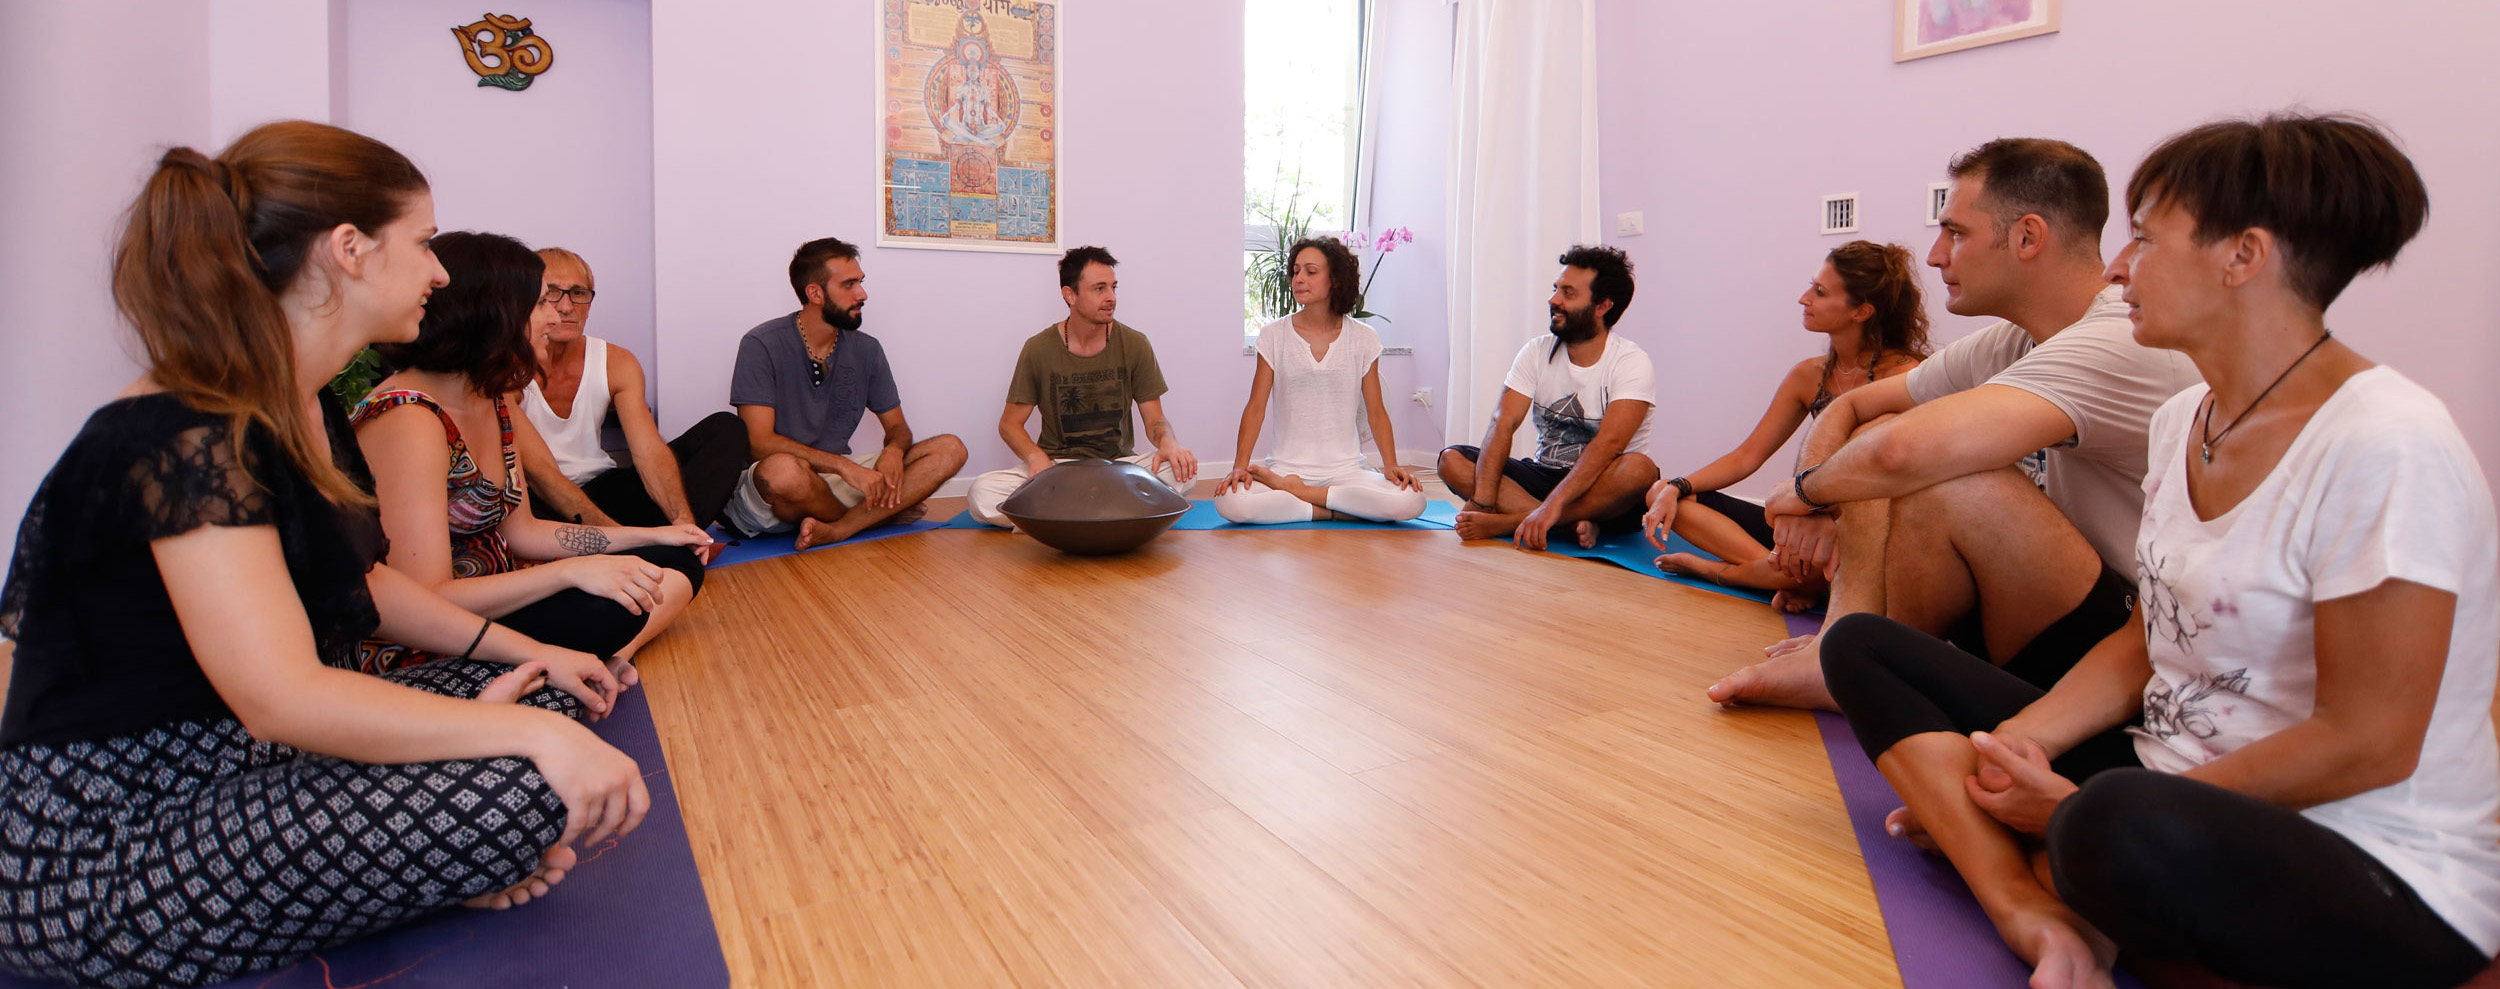 corso-meditazione-centro-samadhi-seveso